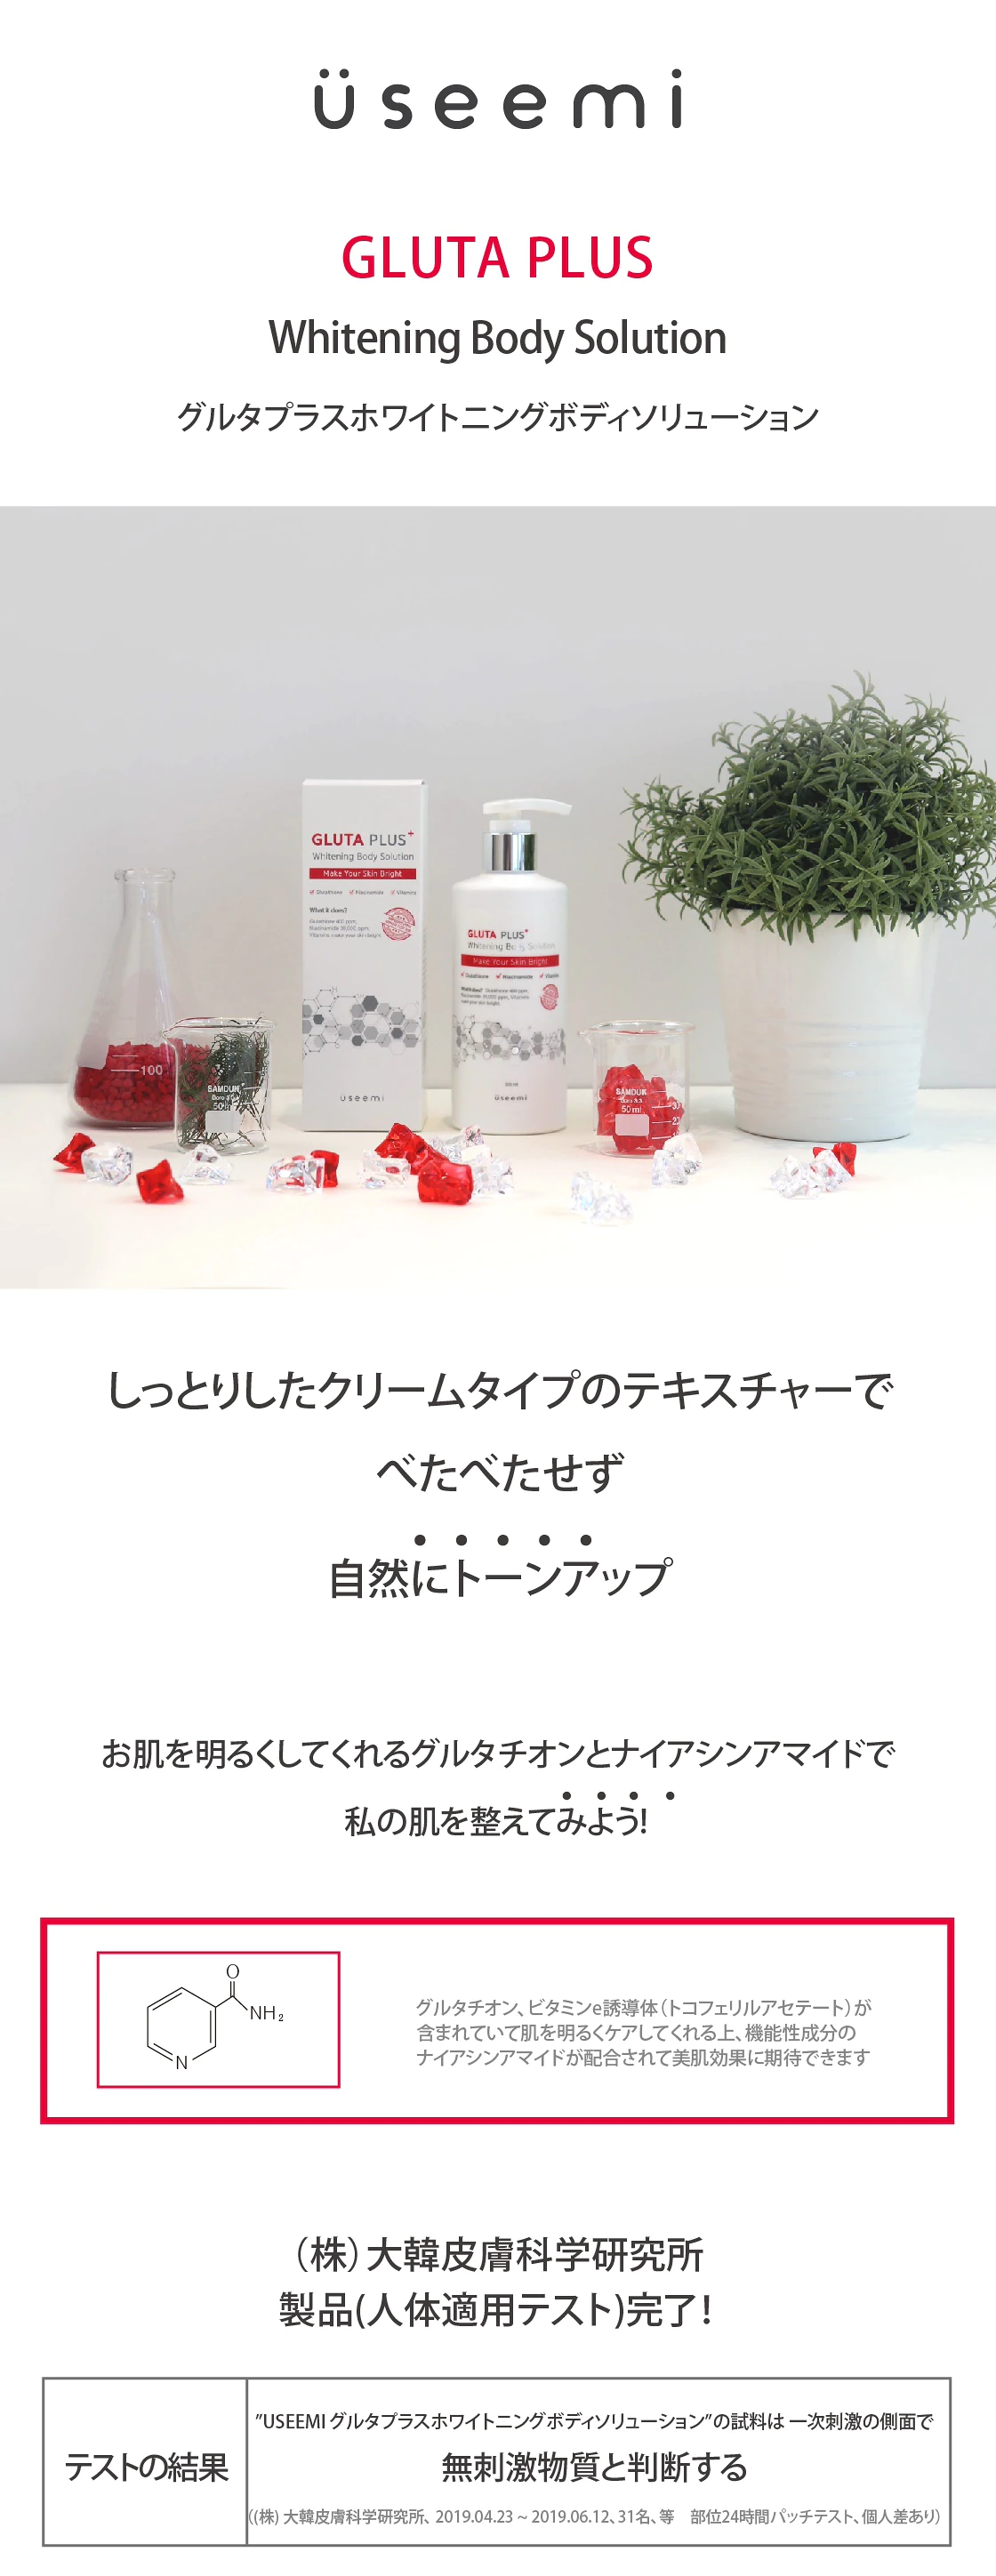 Useemi(ユシミ) グルタプラスホワイトニングボディソリューションの商品画像サムネ2 